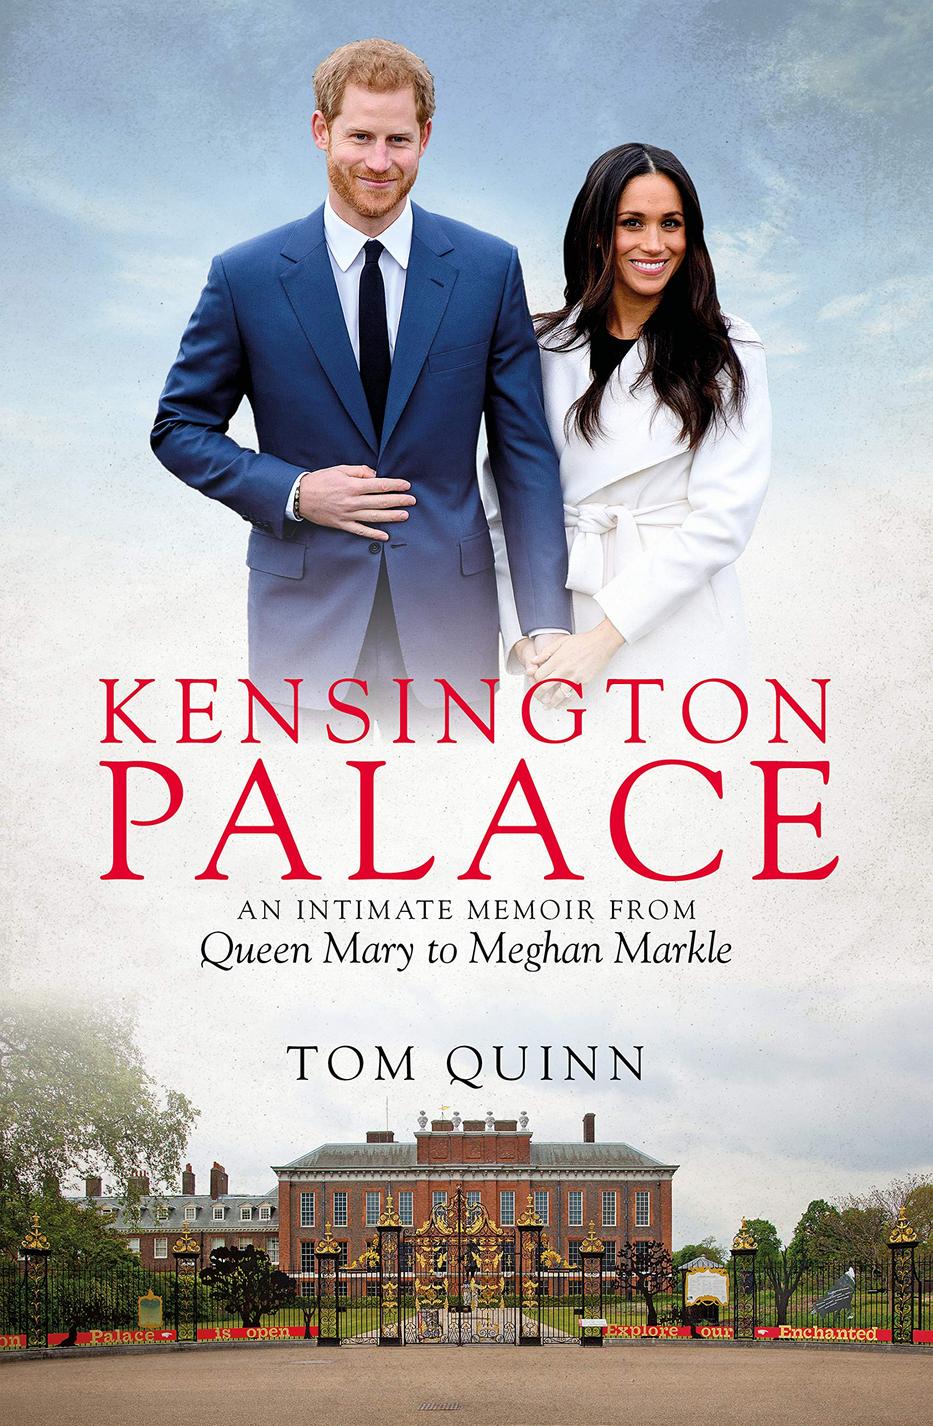 Tom Quinn könyvében a személyzet tagjai vallanak a Kensington Palota titkairól